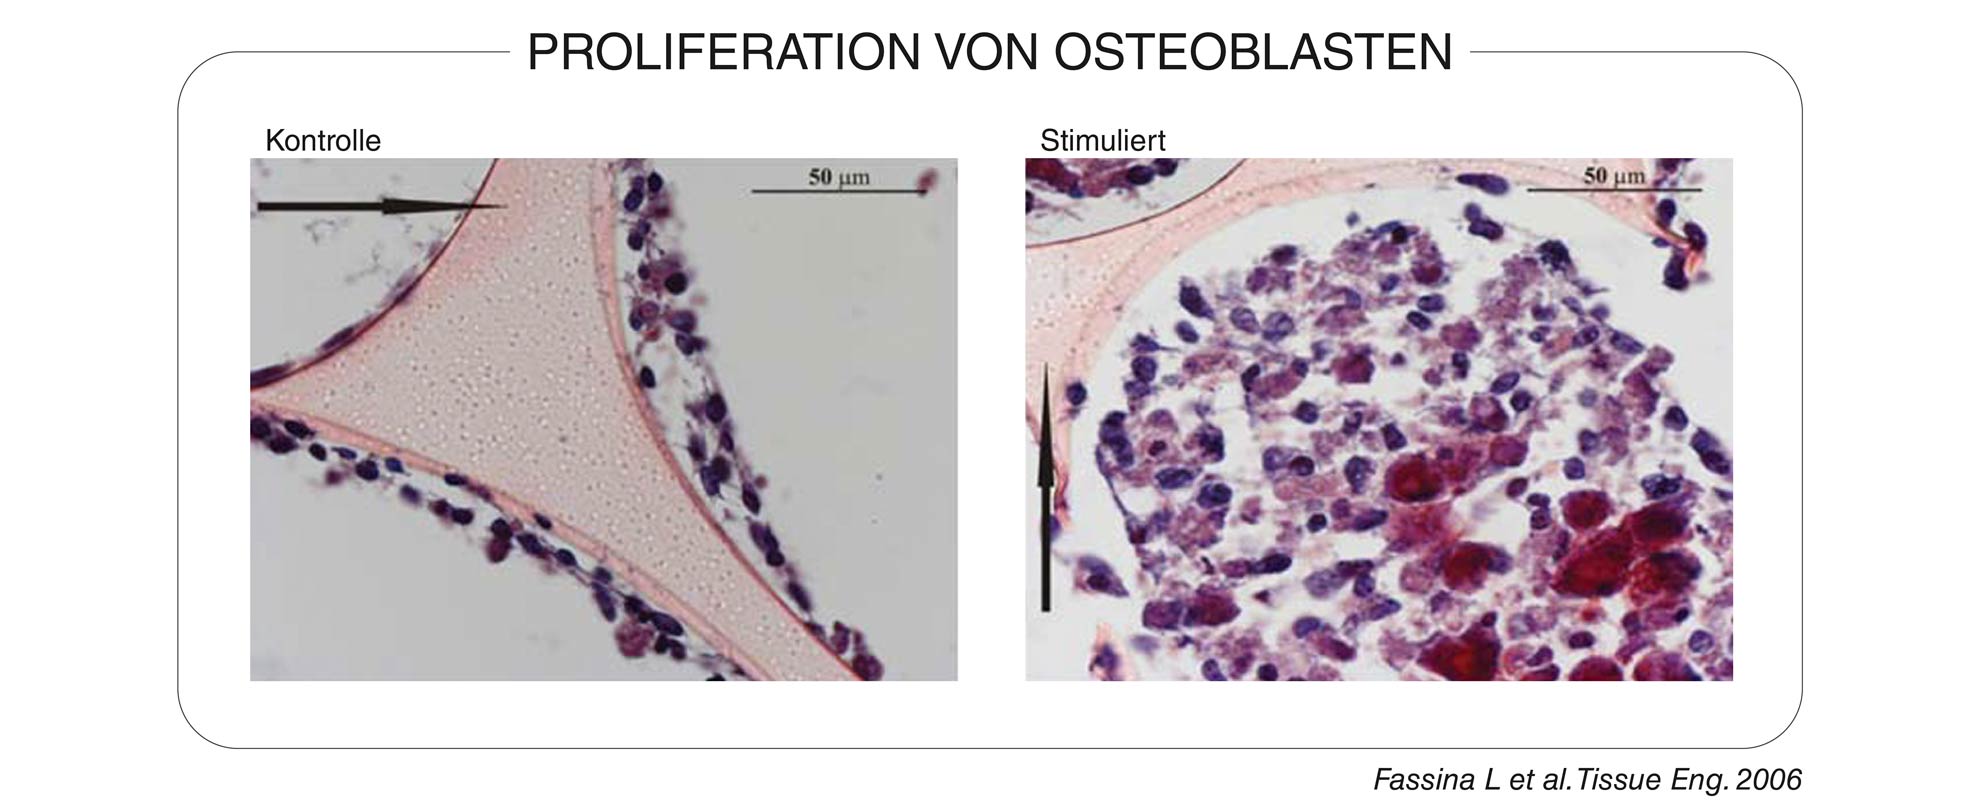 Proliferation von Osteoblasten